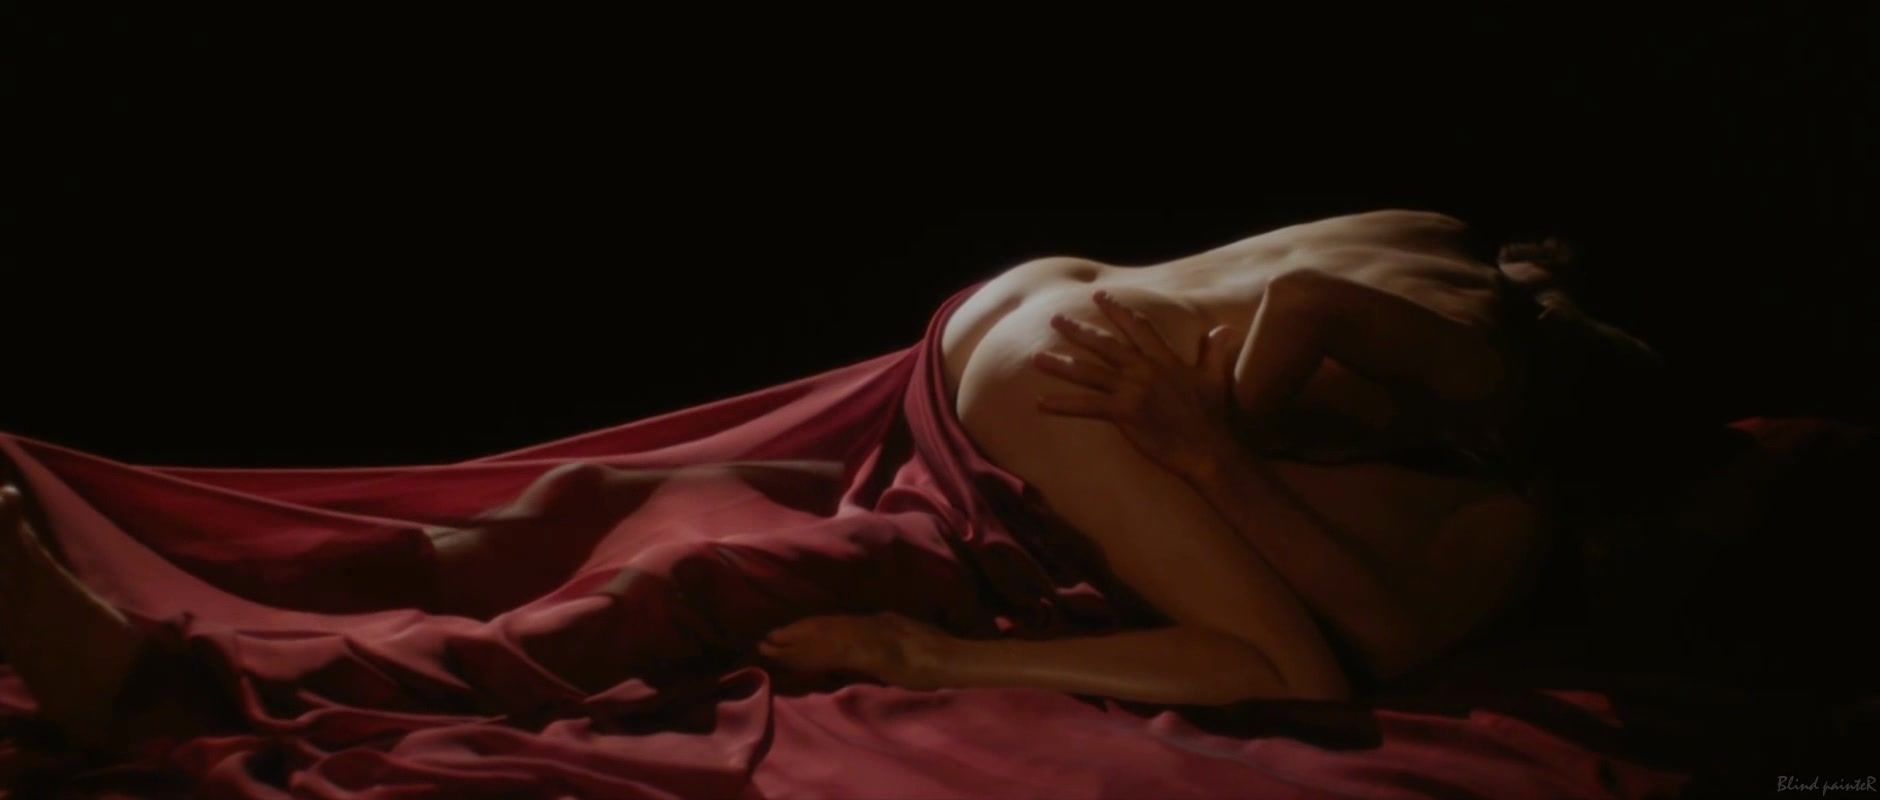 Panties Naked Veronique Picciotto - Suivez La Fleche (2011) Oil